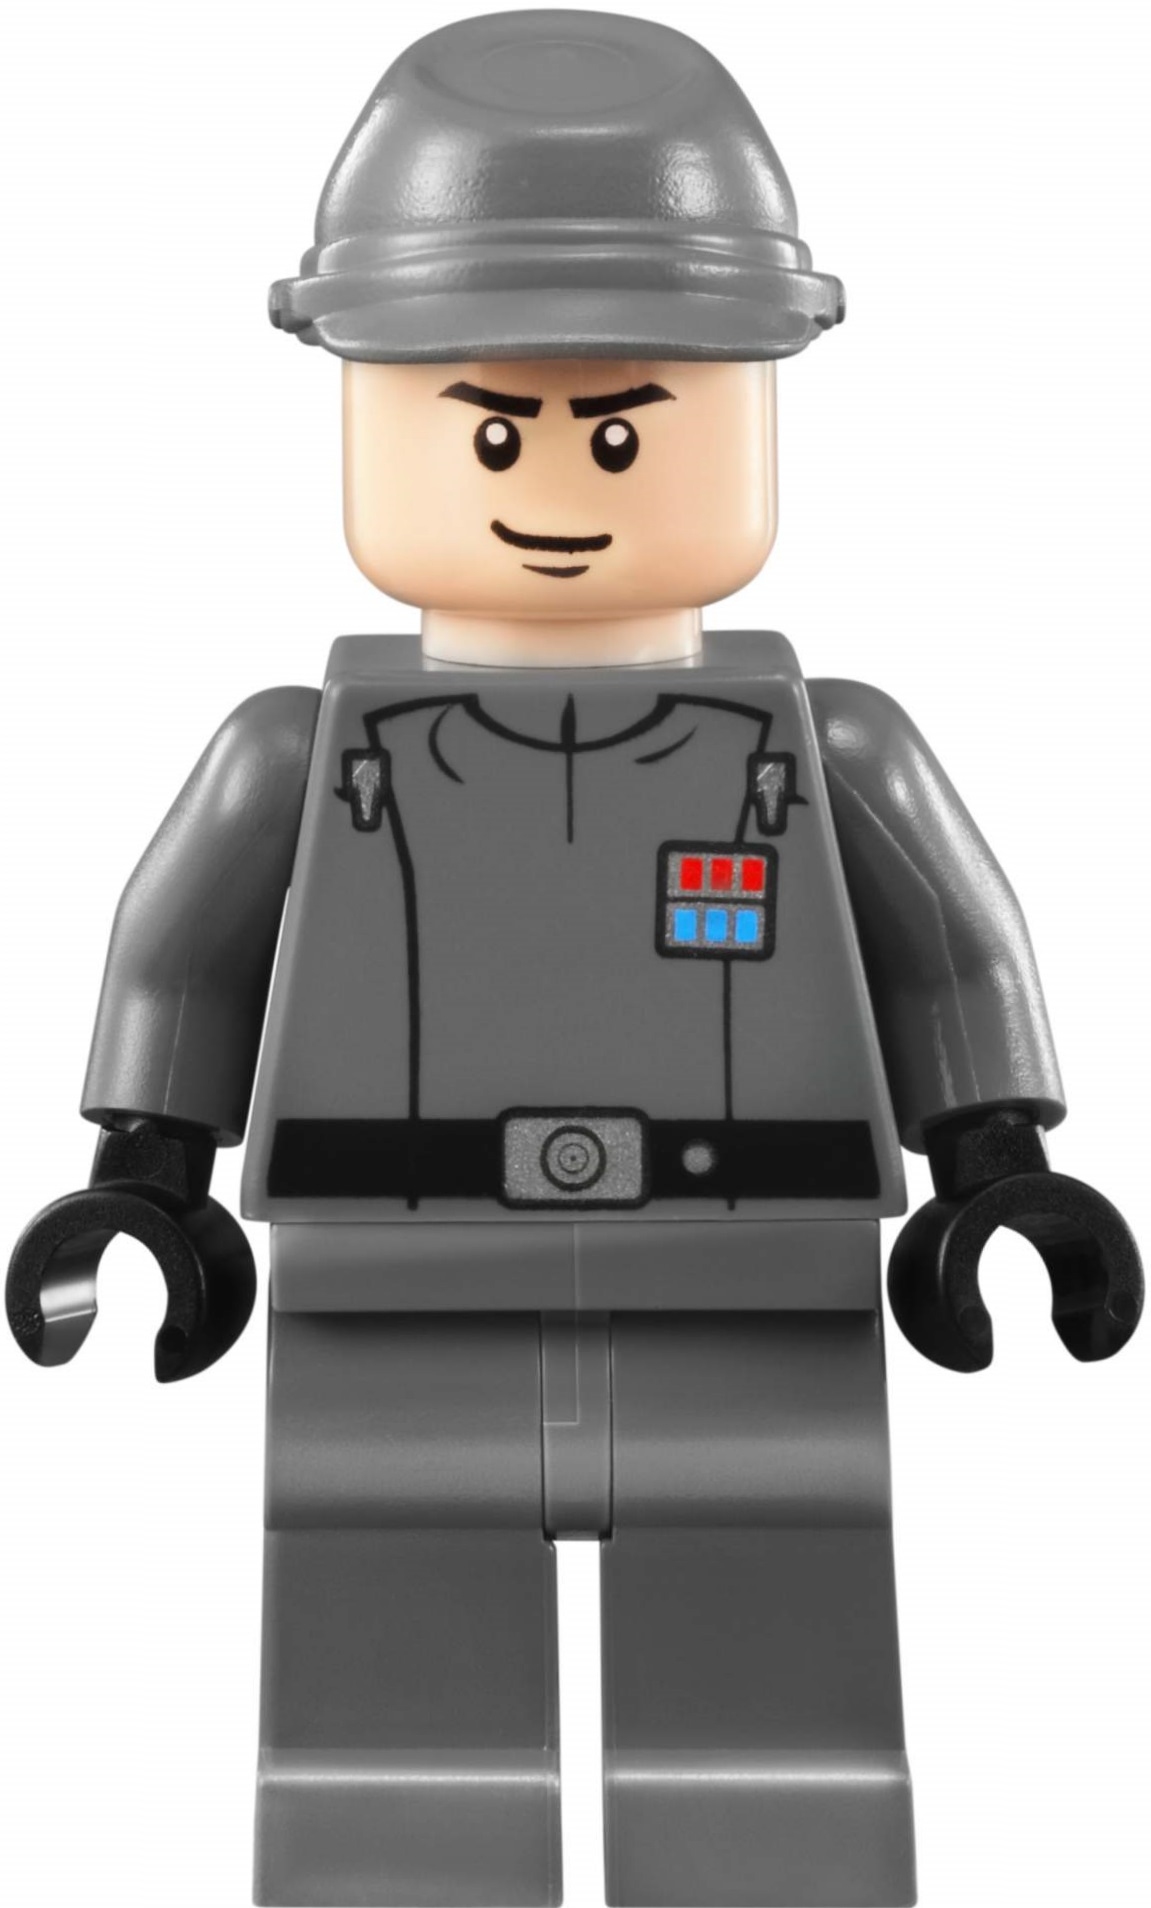 Лего Star Wars Имперский офицер